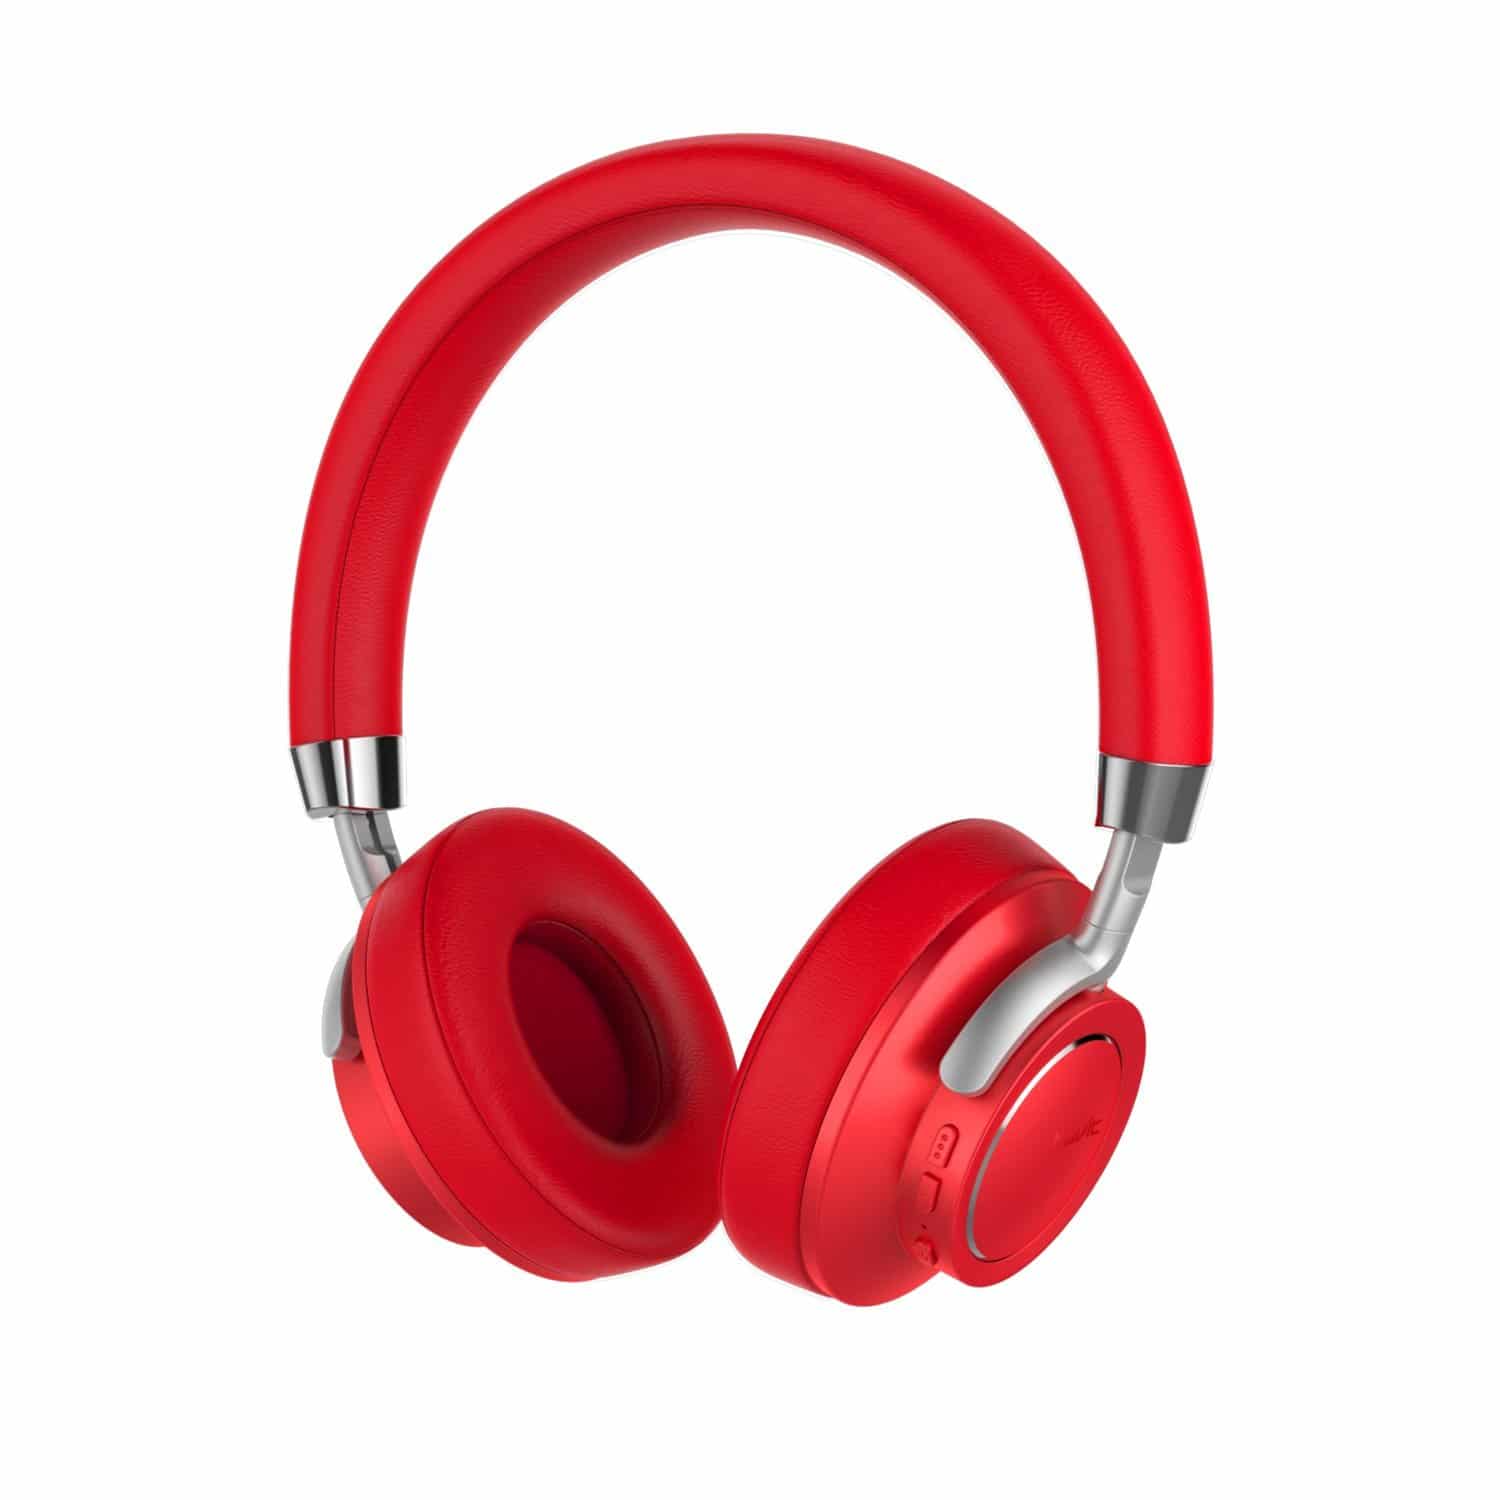 HAVIT I18 kabelgebundene/kabellose Kopfhörer mit Bluetooth 4.1